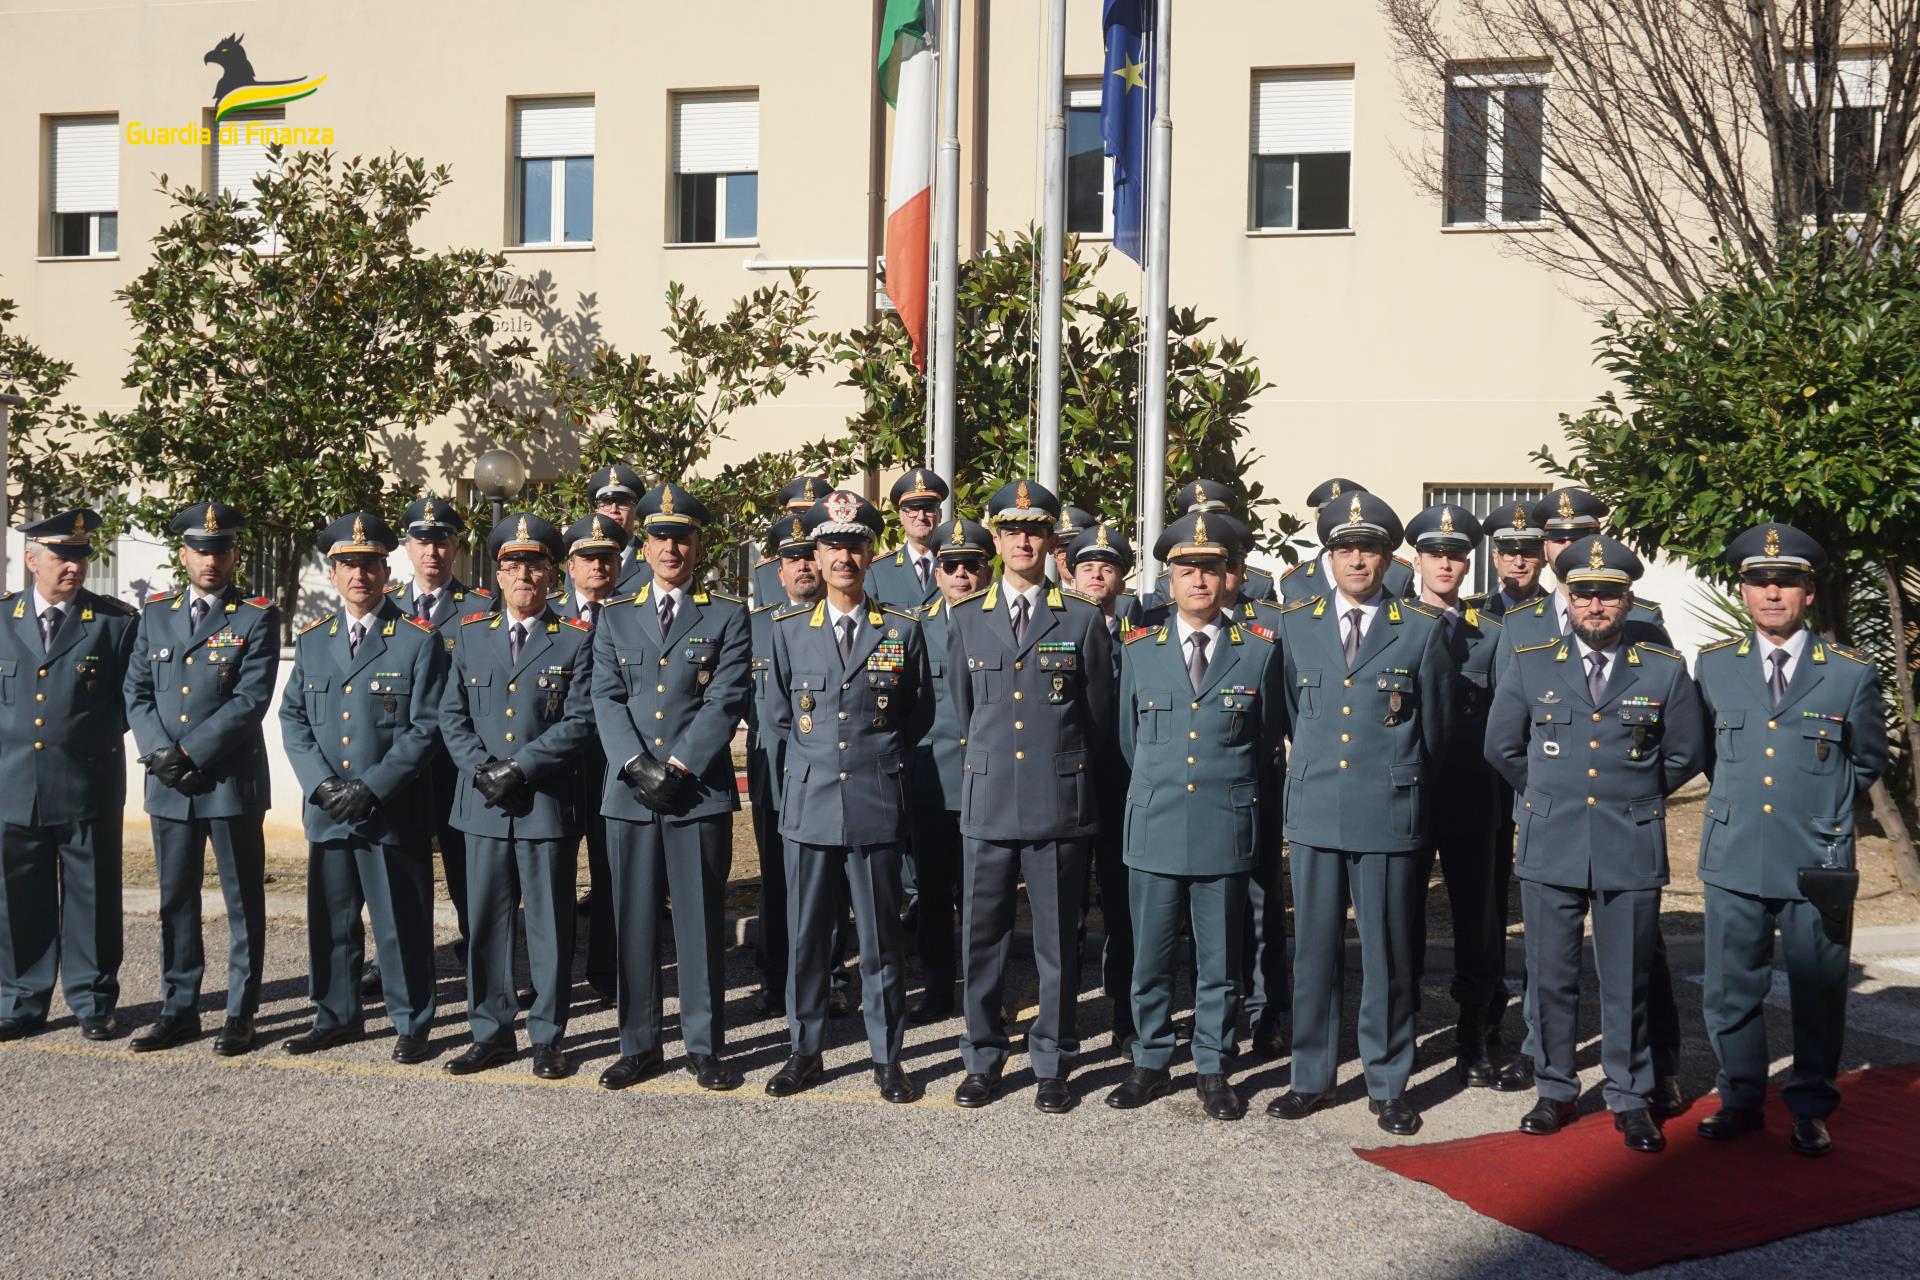 Guardia di Finanza Chieti, visita alla Tenenza Ortona del Comandante Regionale Abruzzo - Generale di Brigata Germano Caramignoli